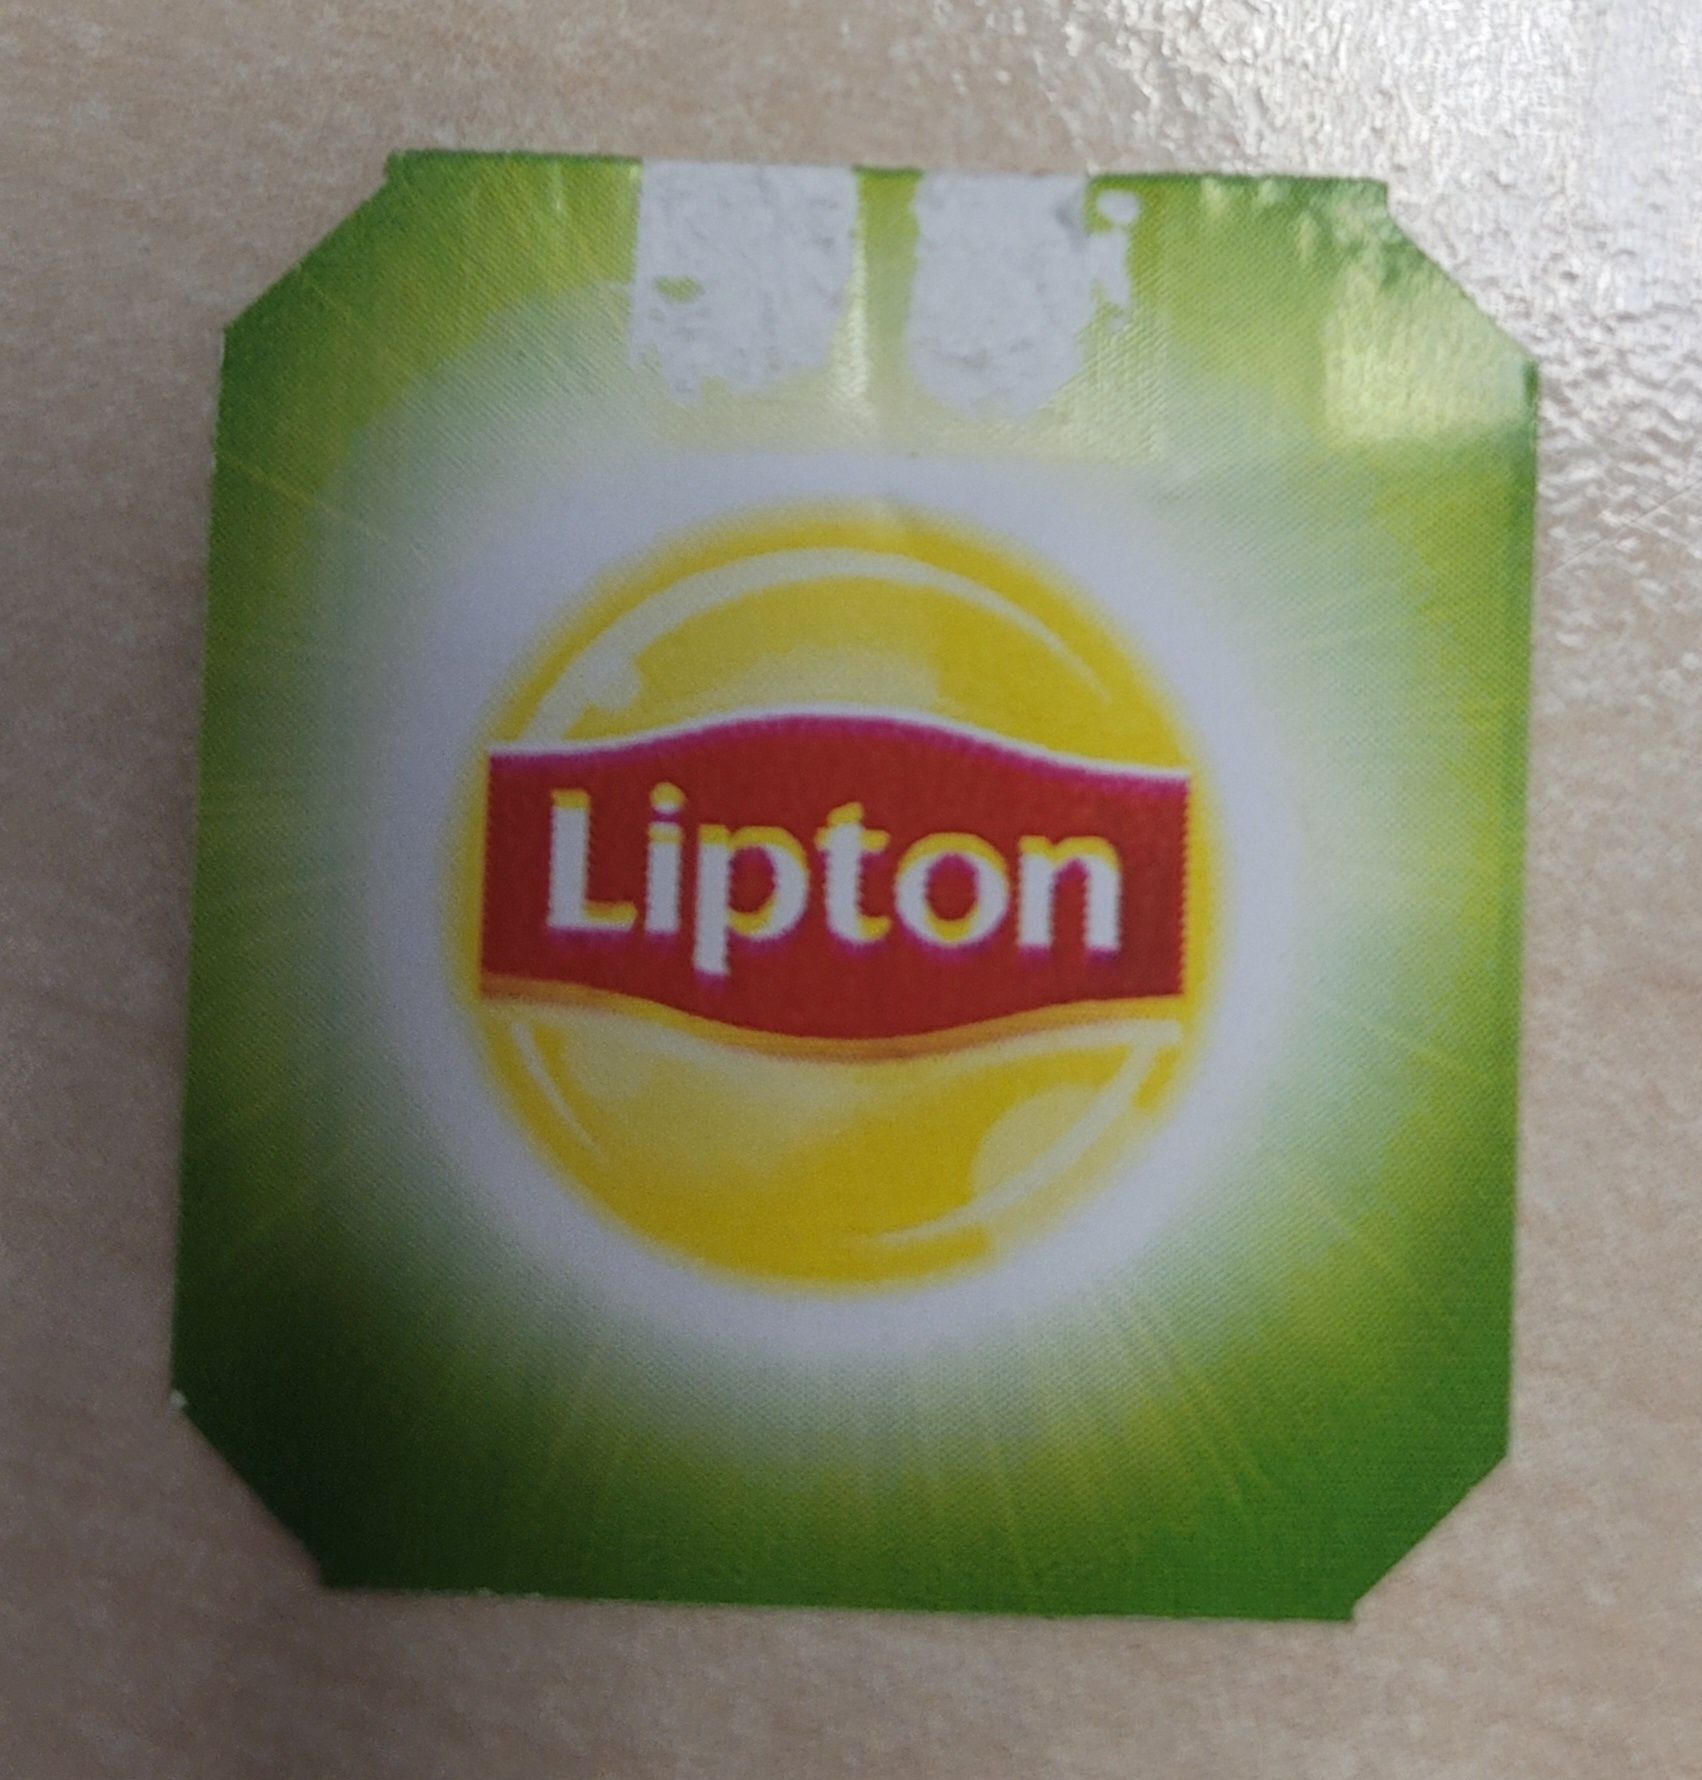 Oddam papierowe zawieszki Lipton